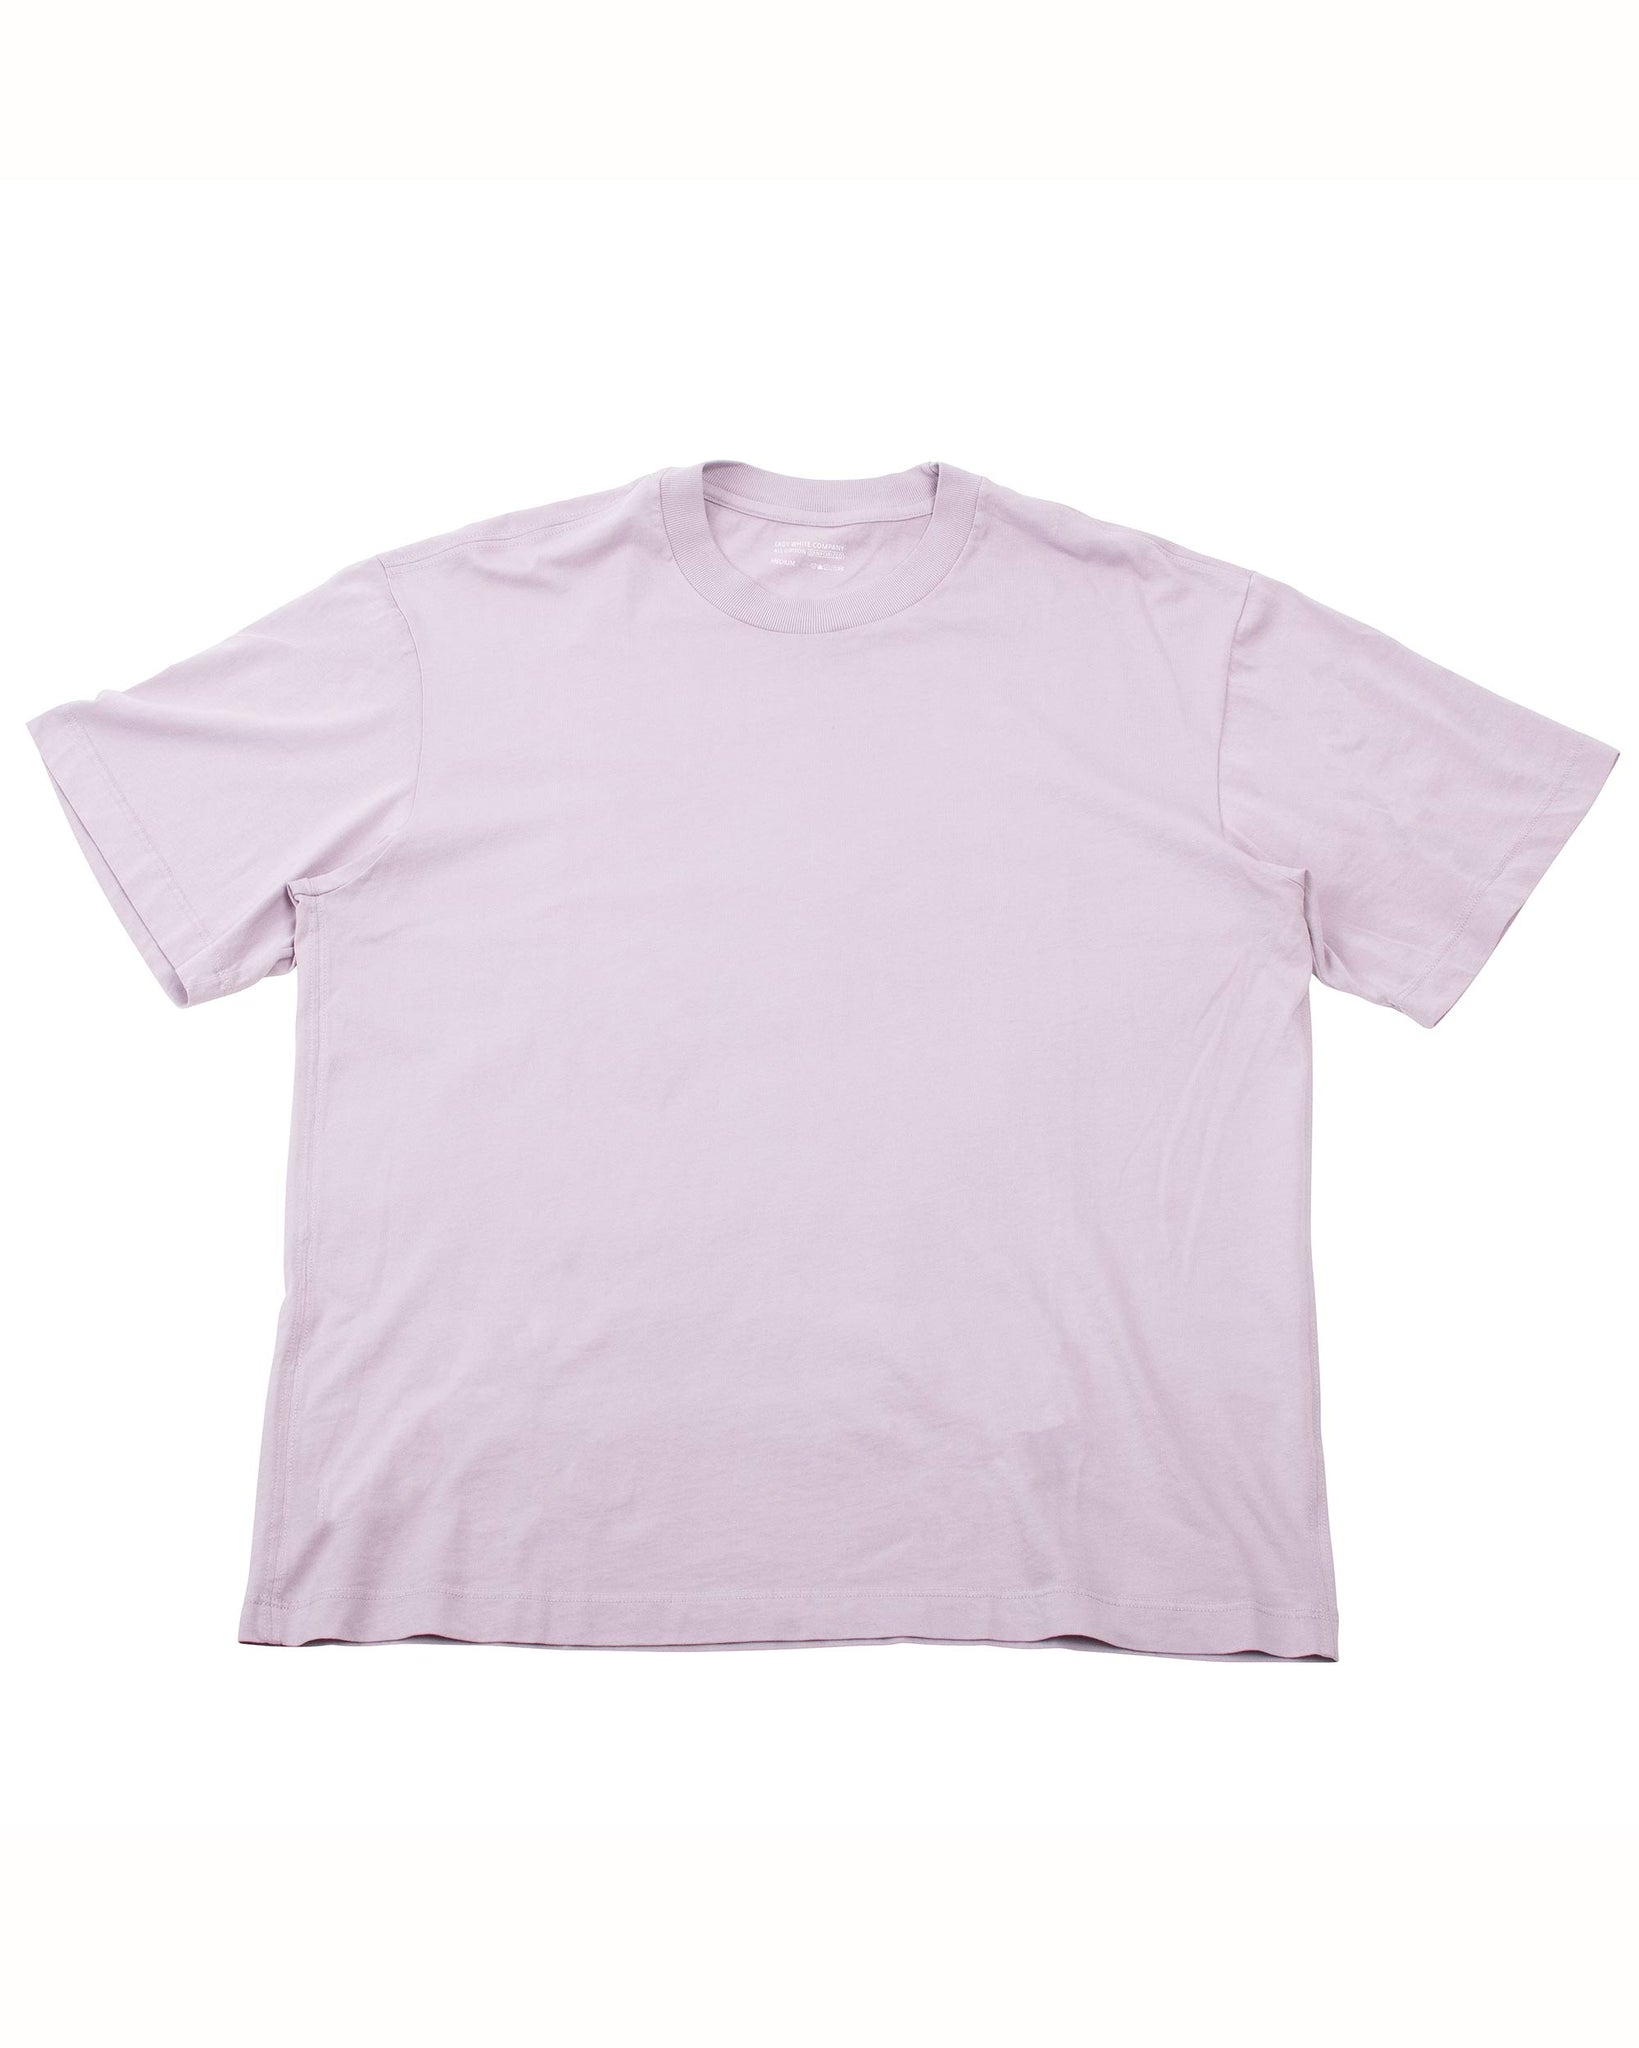 Lady White Co. Athens T-Shirt Greyish Mauve